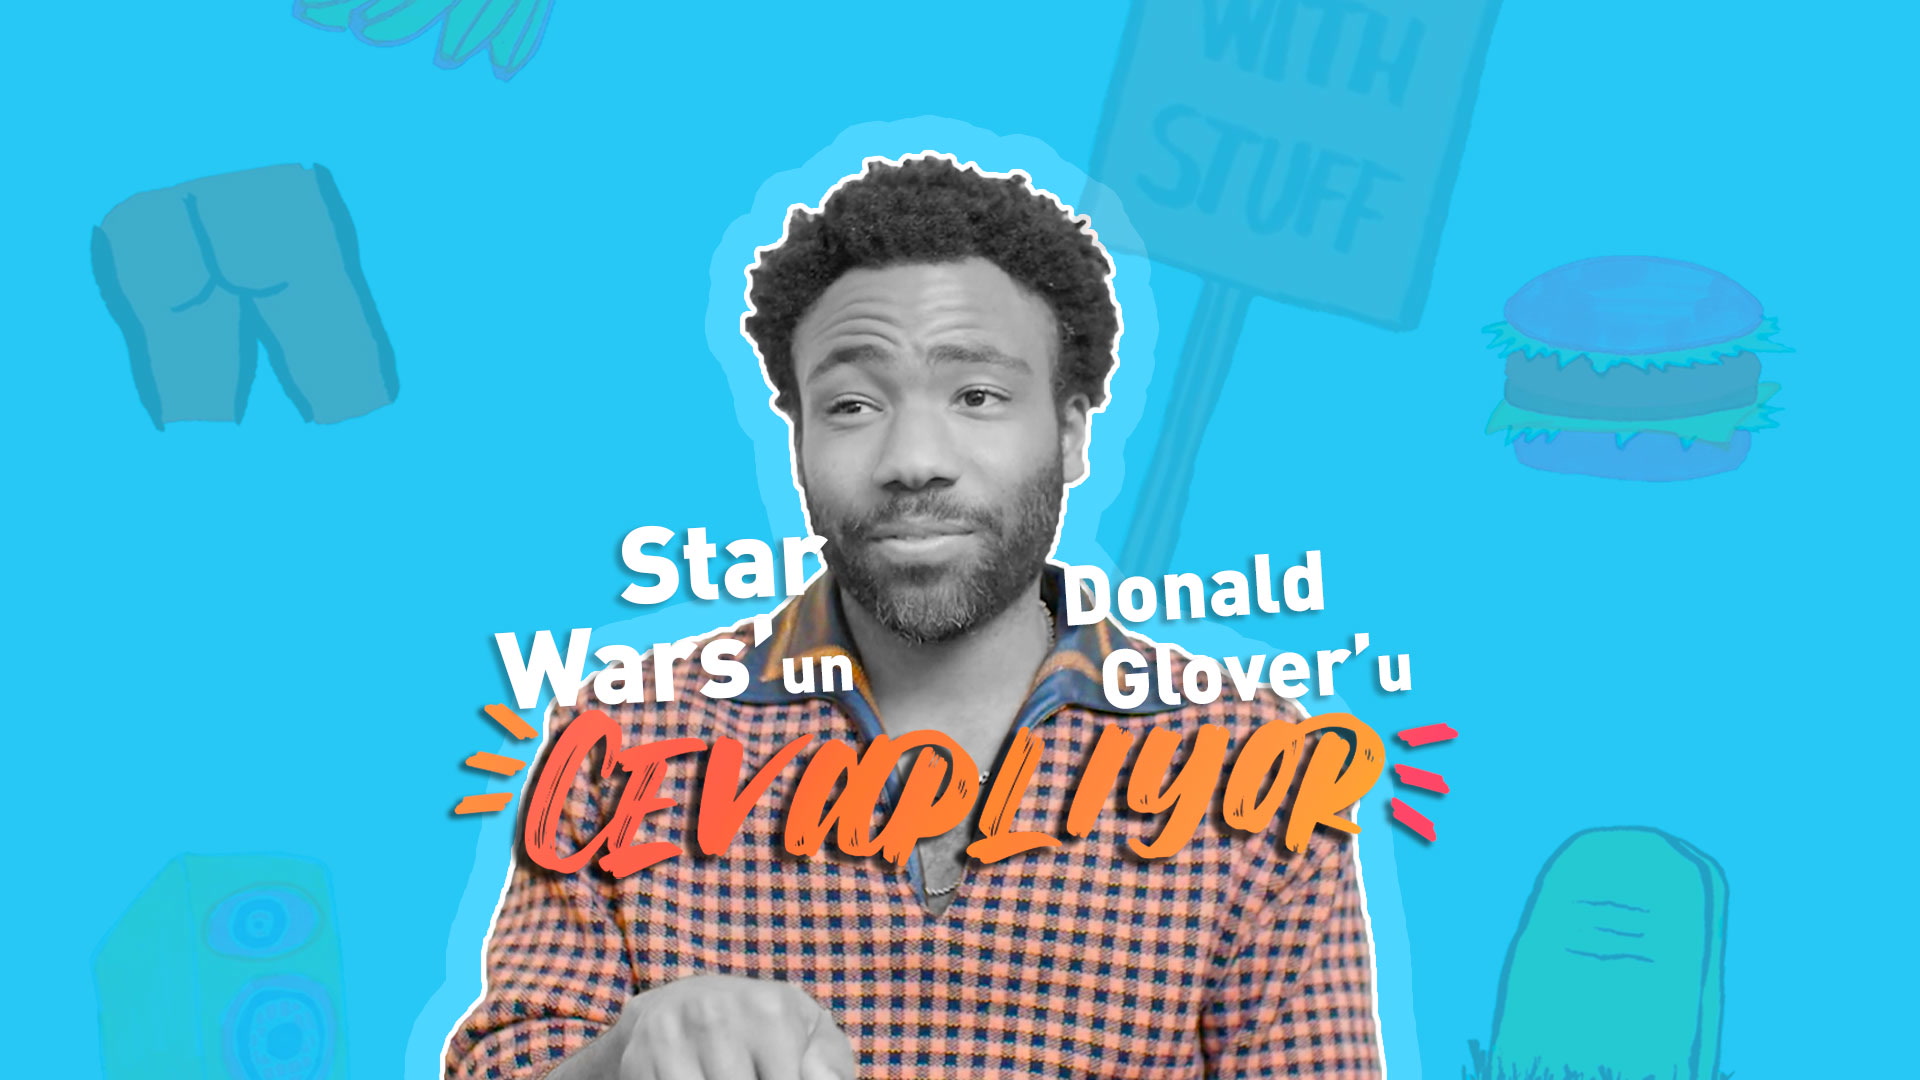 Star Wars'un Donald Glover'ı cevaplıyor 